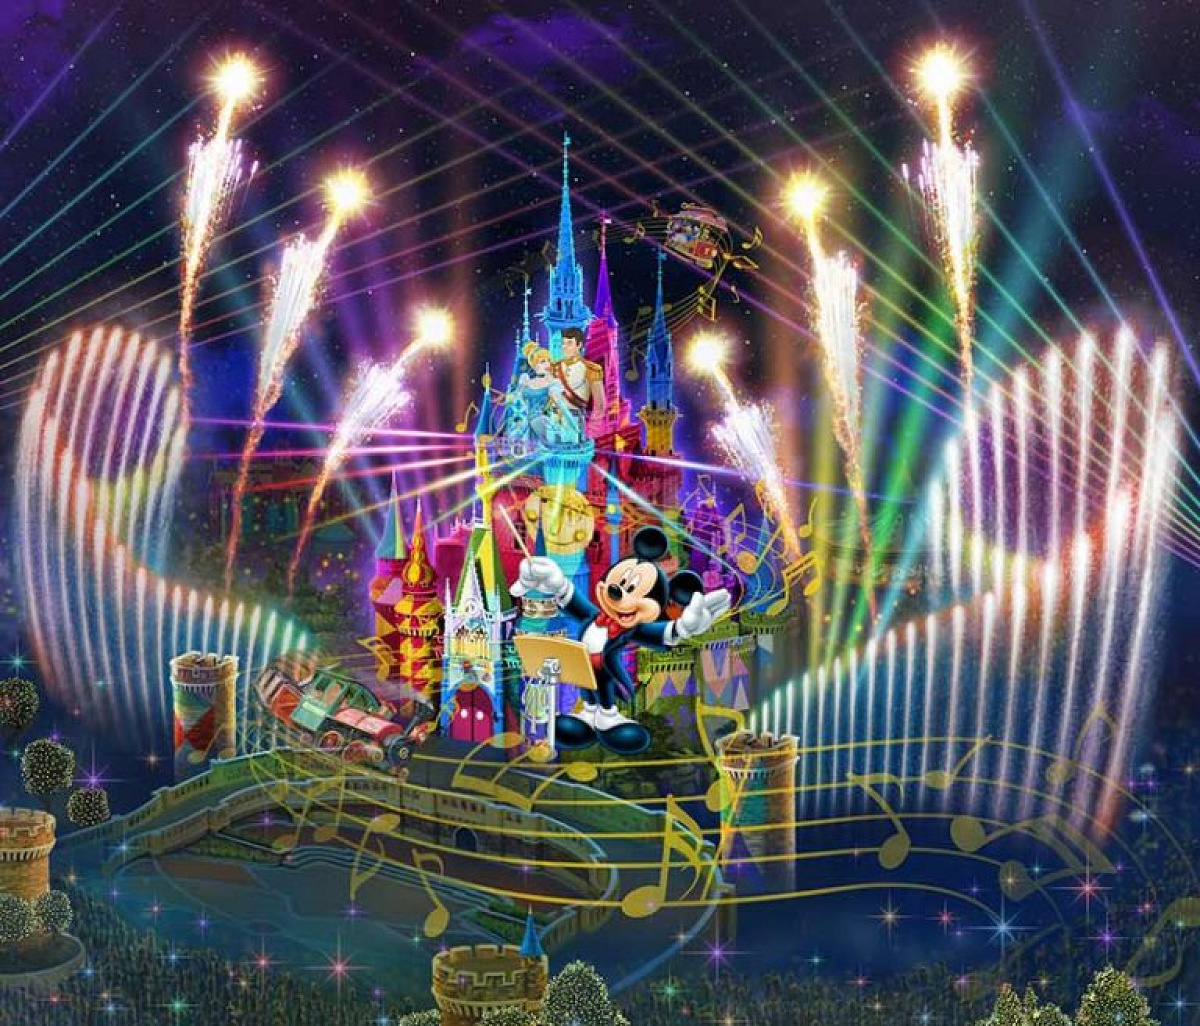 新プロジェクションマッピング「Celebrate! Tokyo Disneyland」